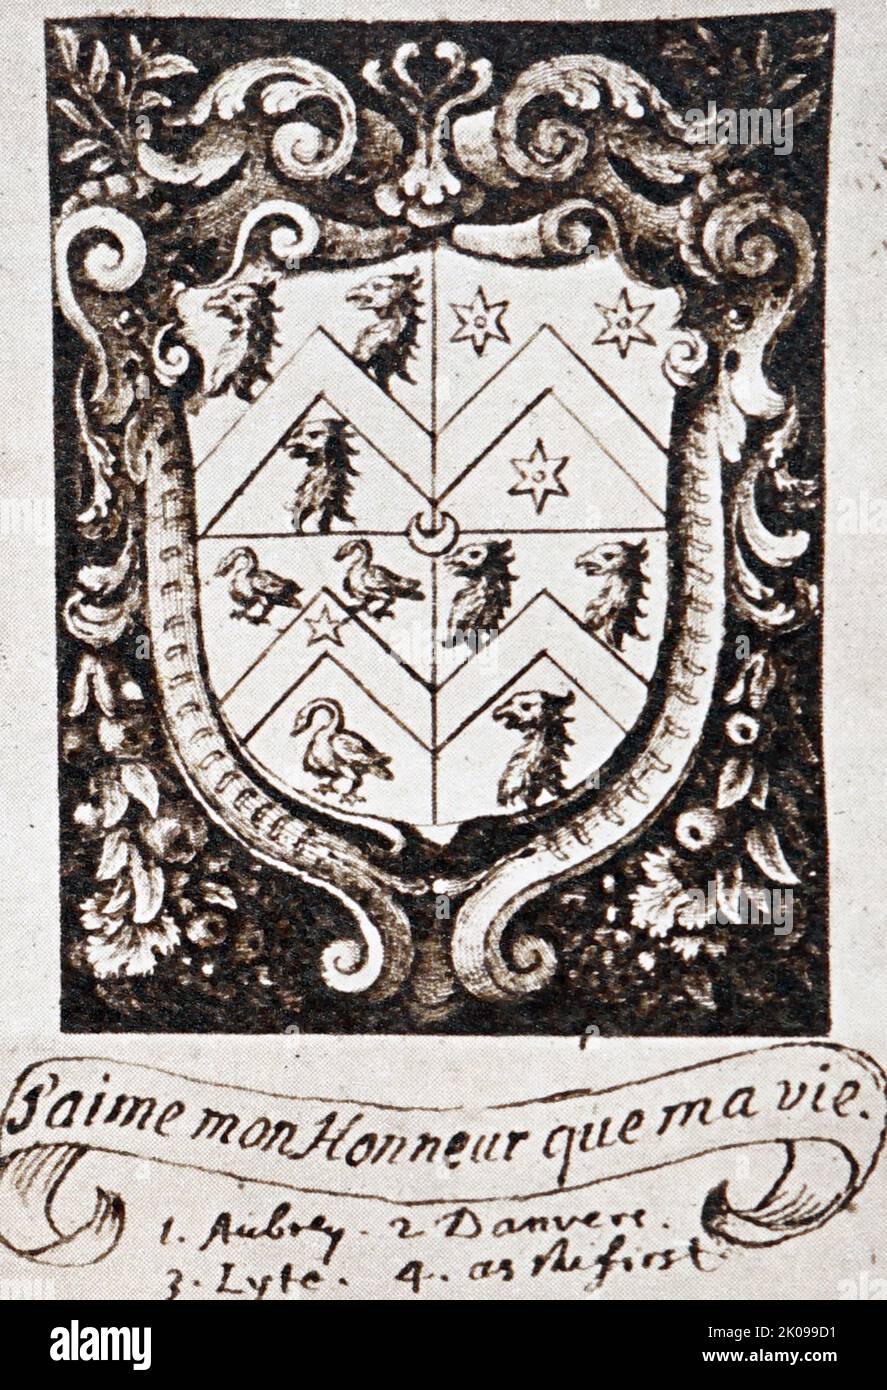 John Aubreys Exlibris Exlibris. John Aubrey FRS (12. März 1626 - 7. Juni 1697) war ein englischer Antiquar, Naturphilosoph und Schriftsteller. Er ist vielleicht am besten bekannt als der Autor von The Brief Lives, seiner Sammlung von kurzen biografischen Stücken. Stockfoto